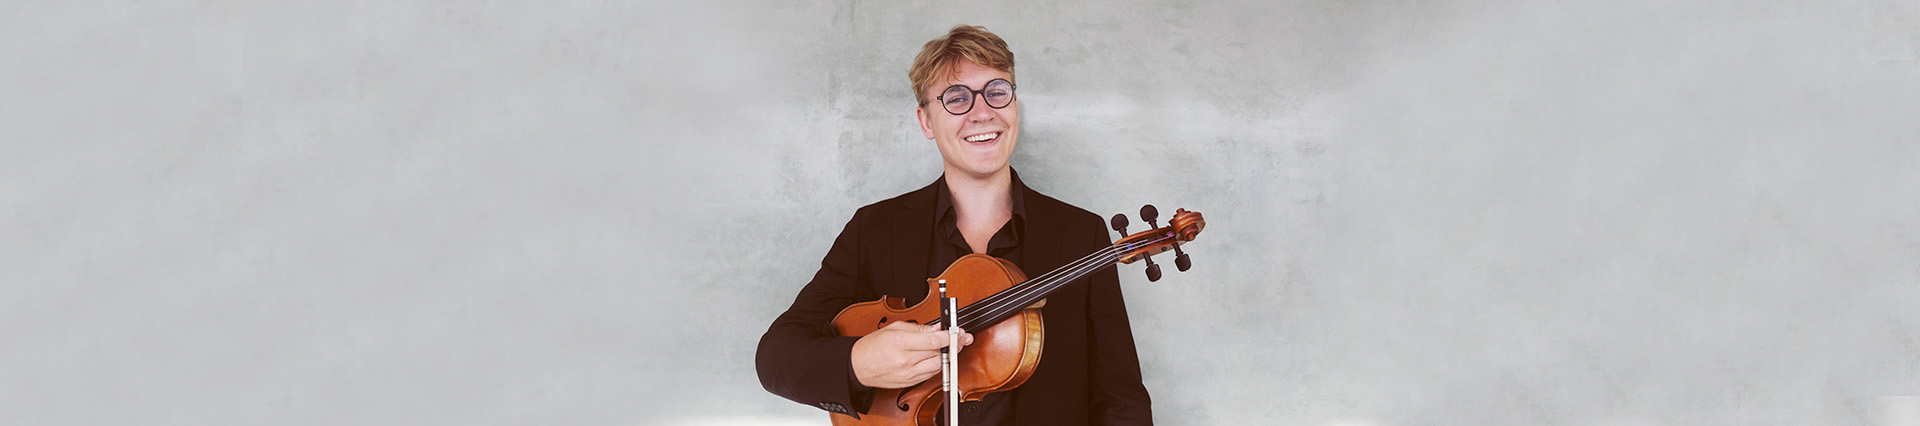 HSO – Brahms med Burstedt – Mästarprov för viola & symfoniorkester